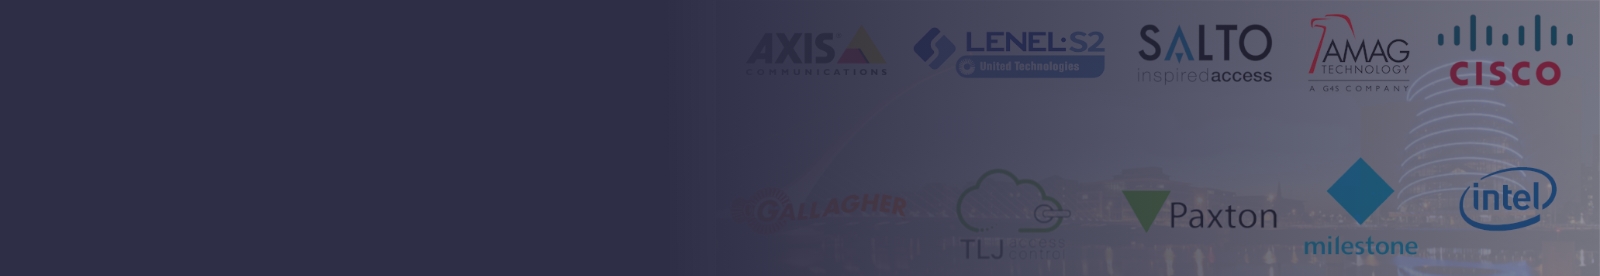 AXIS Q16 Series